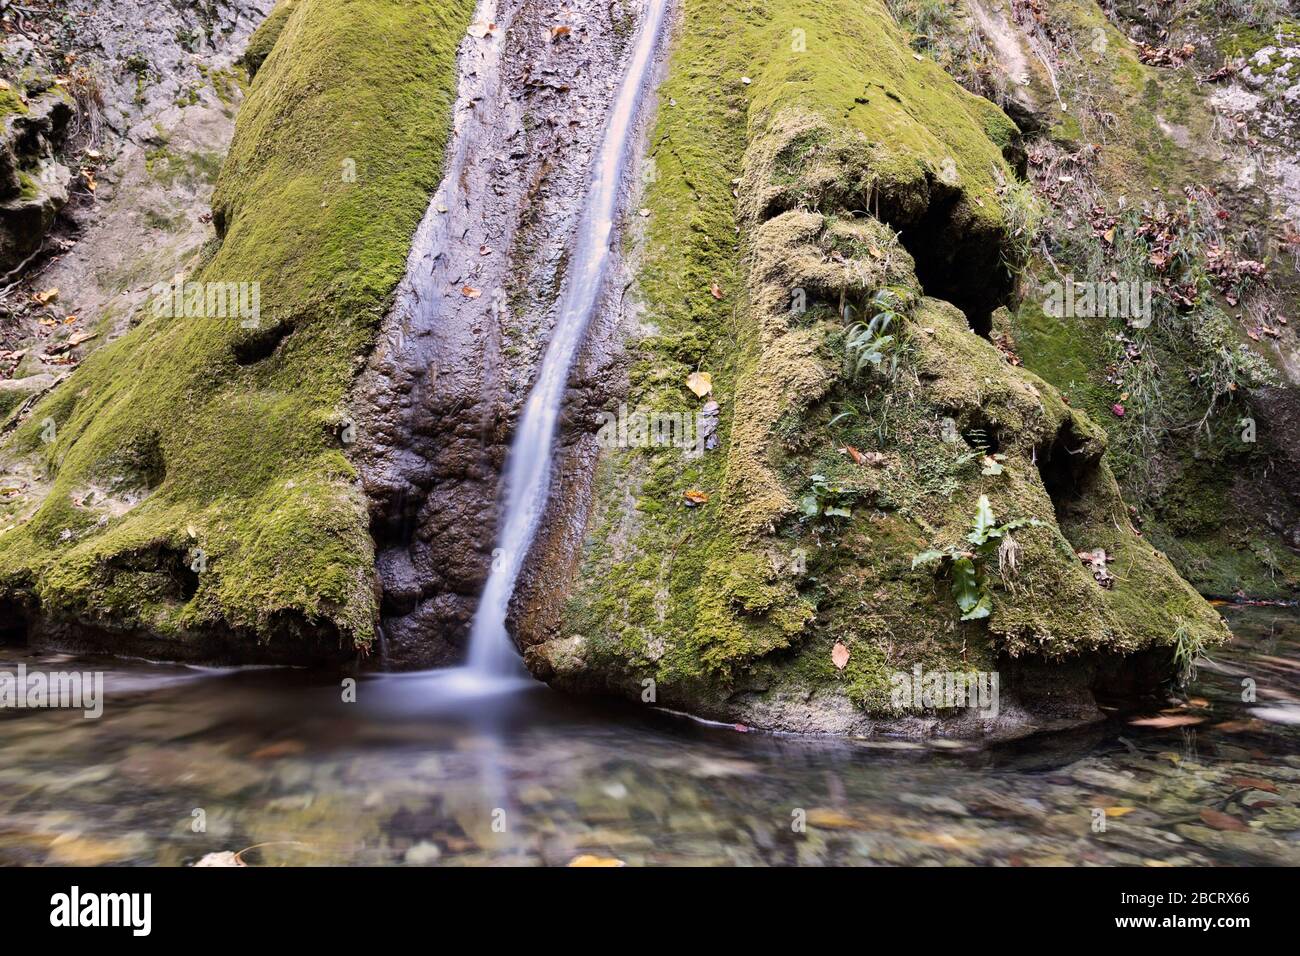 detail of susara waterfallin beusnita cheile nerei national park, Romania Stock Photo